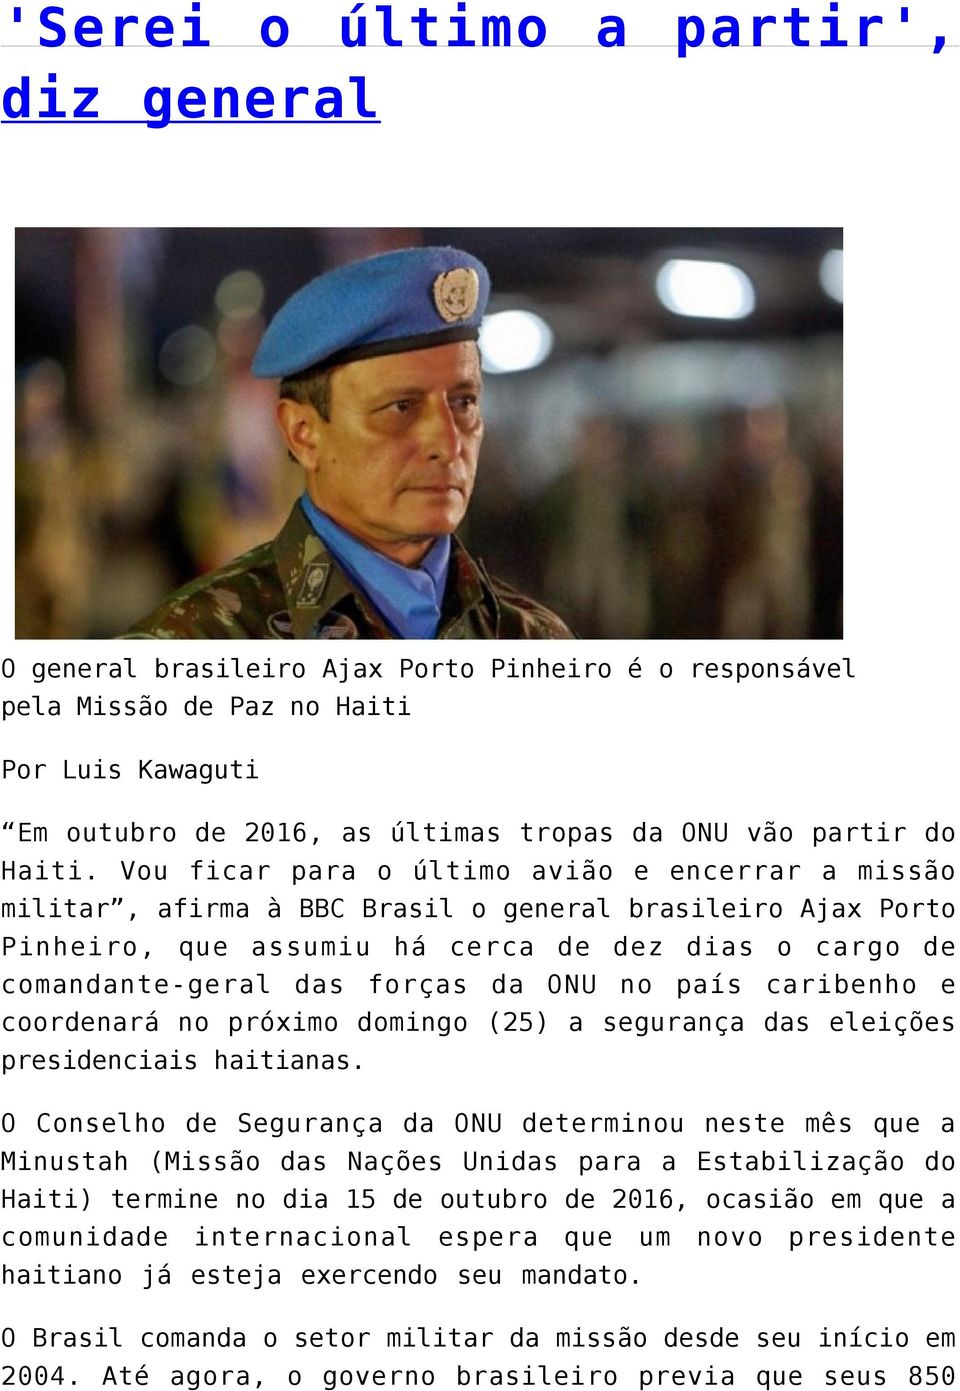 Vou ficar para o último avião e encerrar a missão militar, afirma à BBC Brasil o general brasileiro Ajax Porto Pinheiro, que assumiu há cerca de dez dias o cargo de comandante-geral das forças da ONU